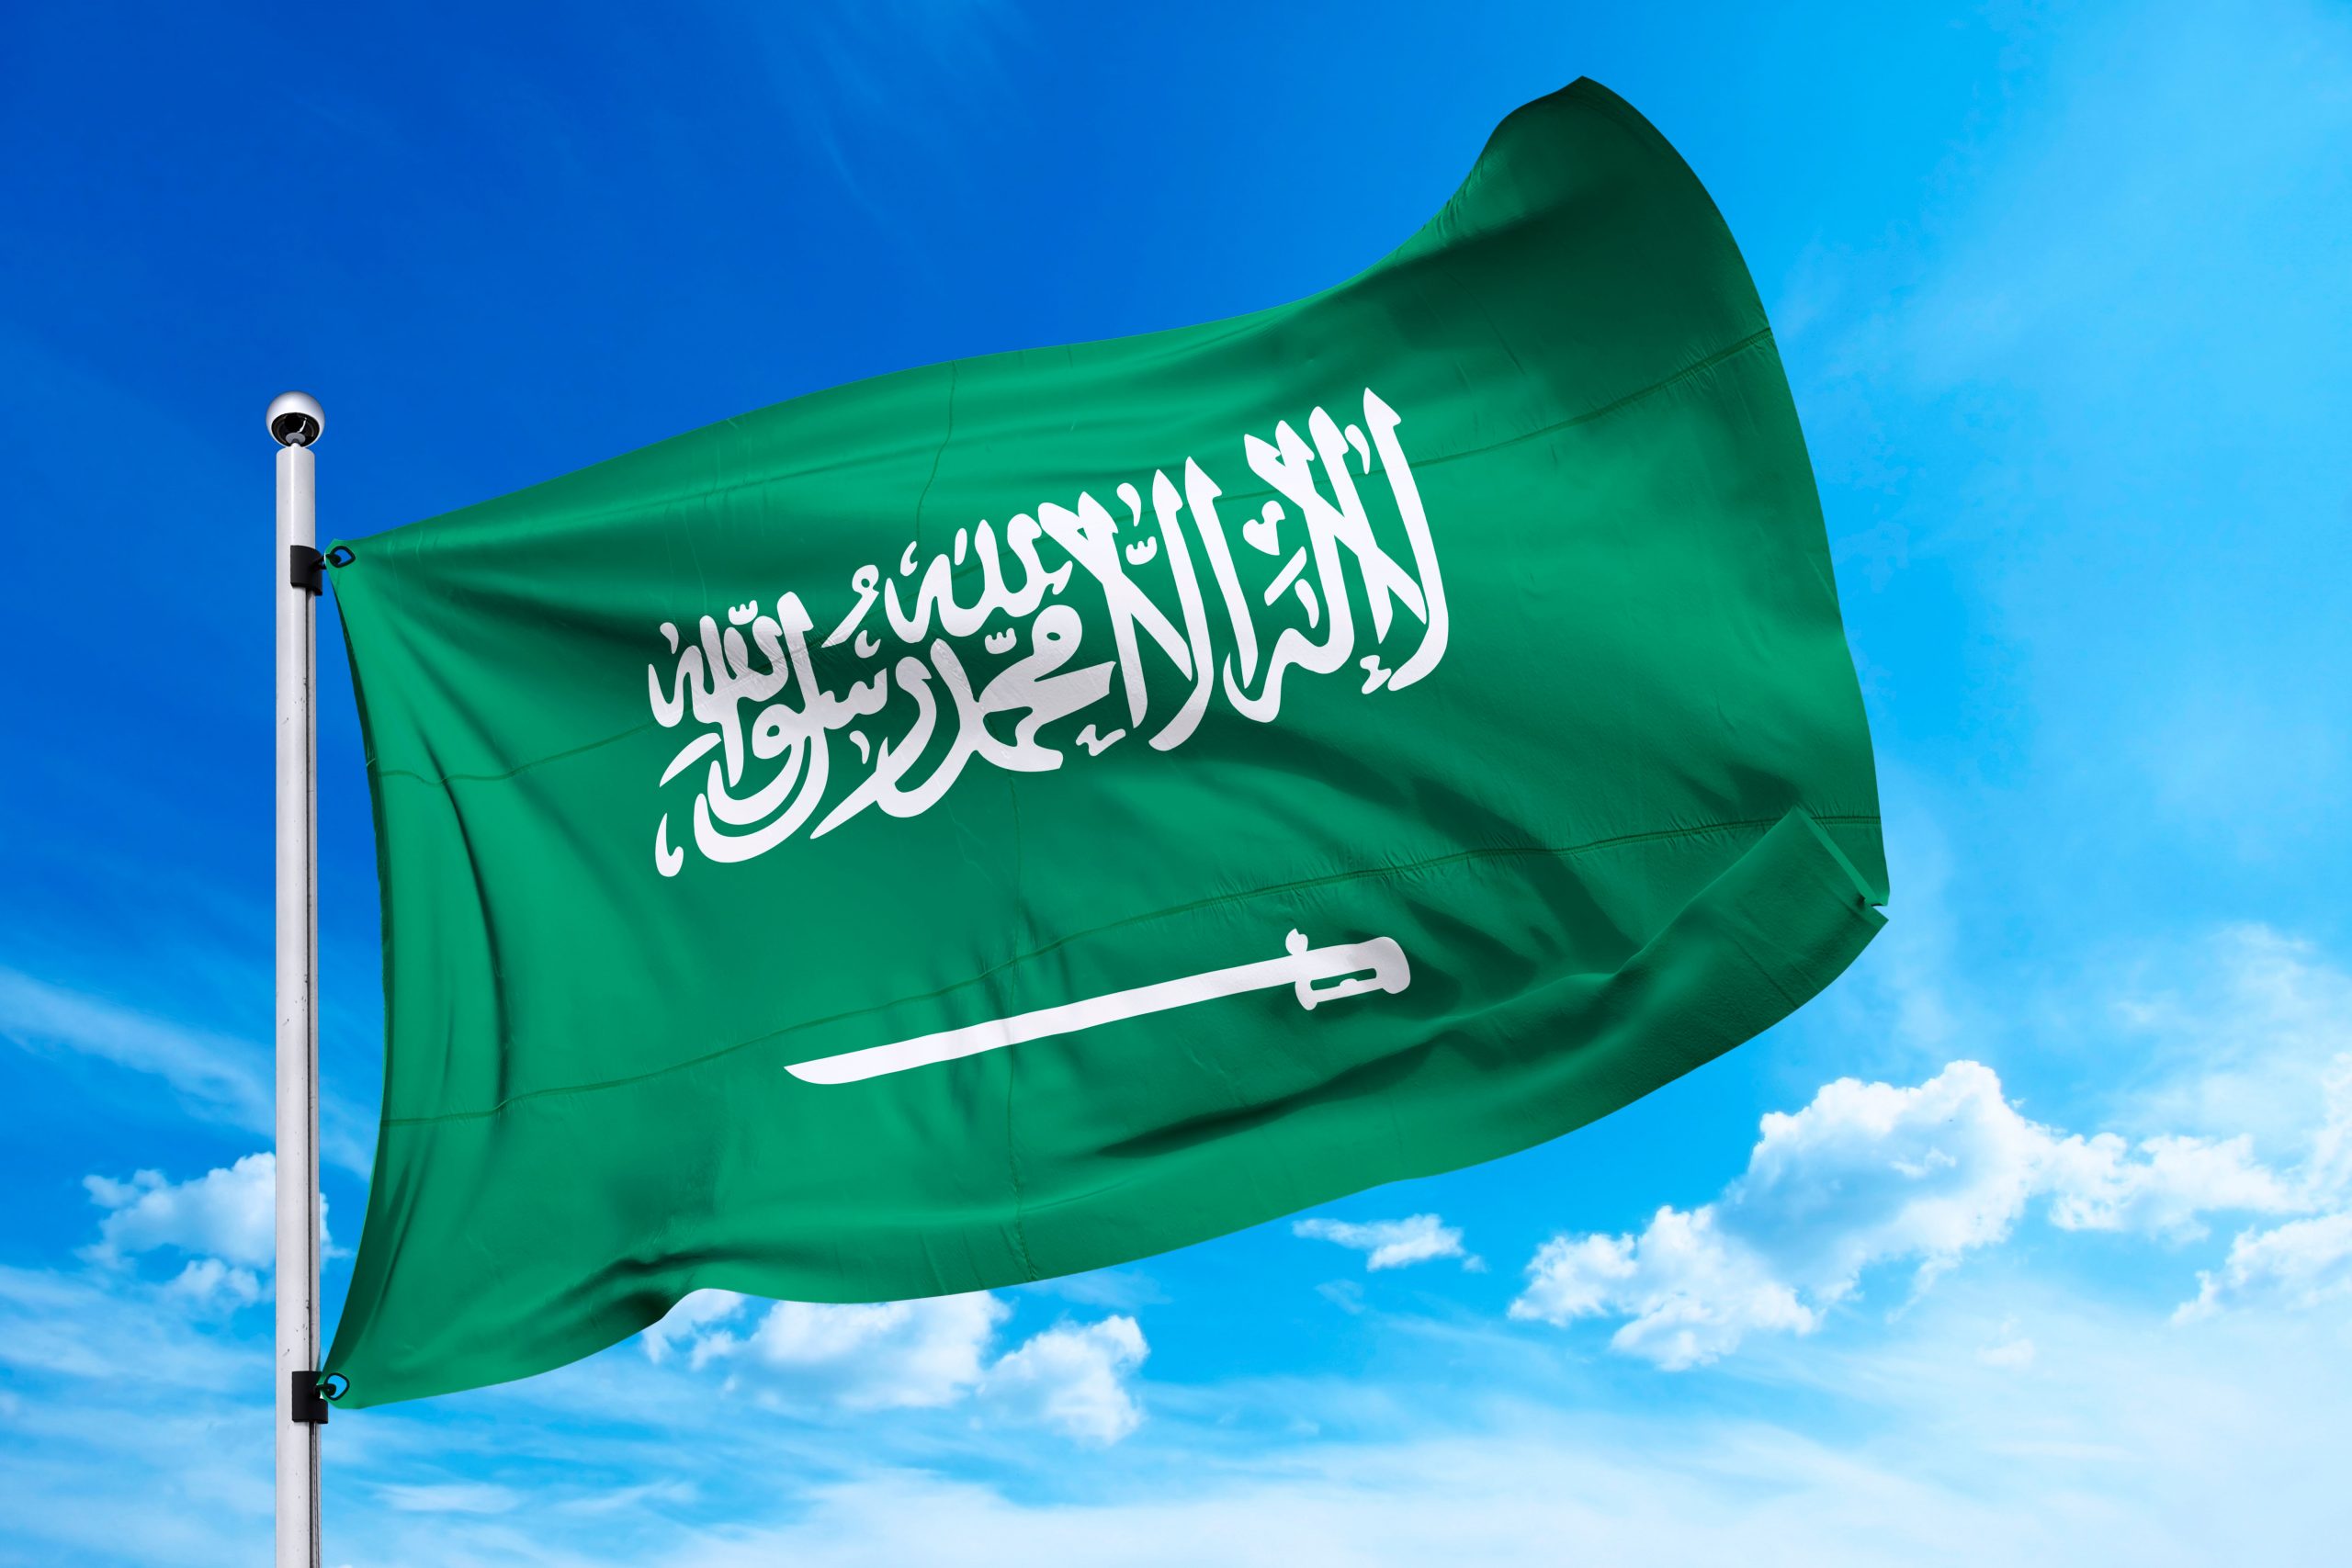 السعودية تؤكد مواصلتها العمل على مكافحة الإرهاب